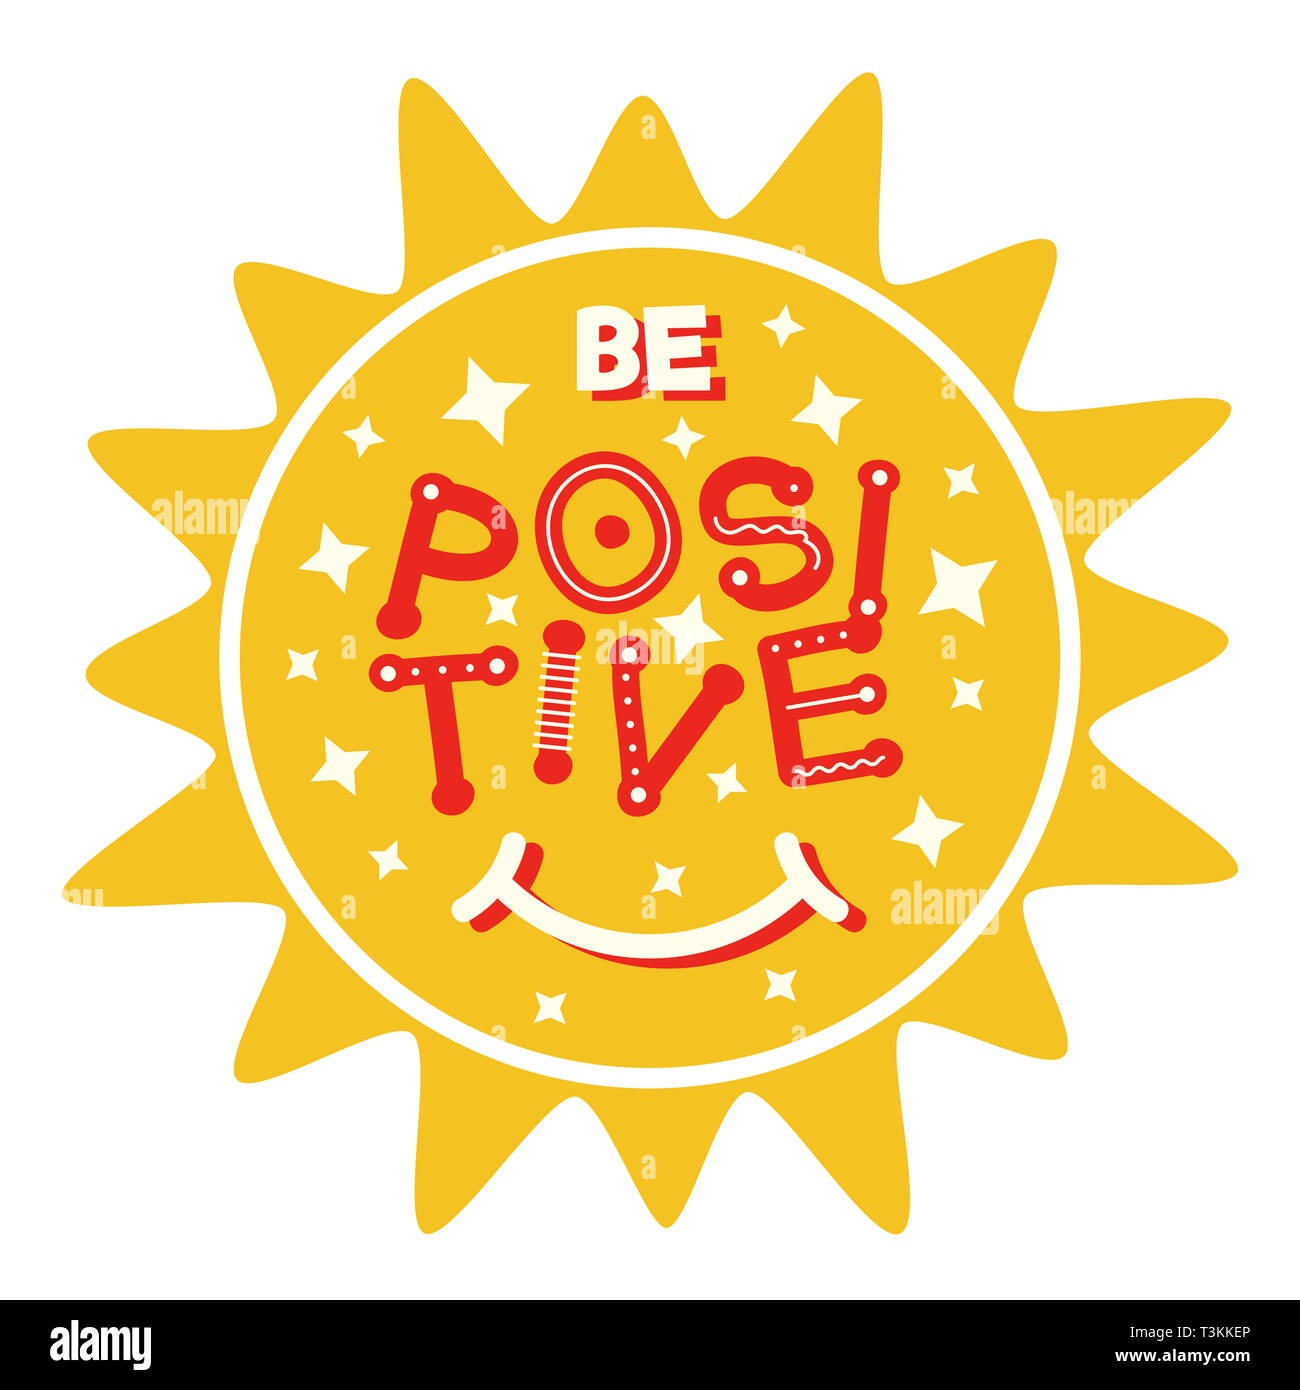 Positives Denken Konzept. Smile Sun mit Spaß-Schriftzug. Positive Slogan für t-shirt und Kleid Grafik drucken oder für ein Poster für Kinder. Stockfoto